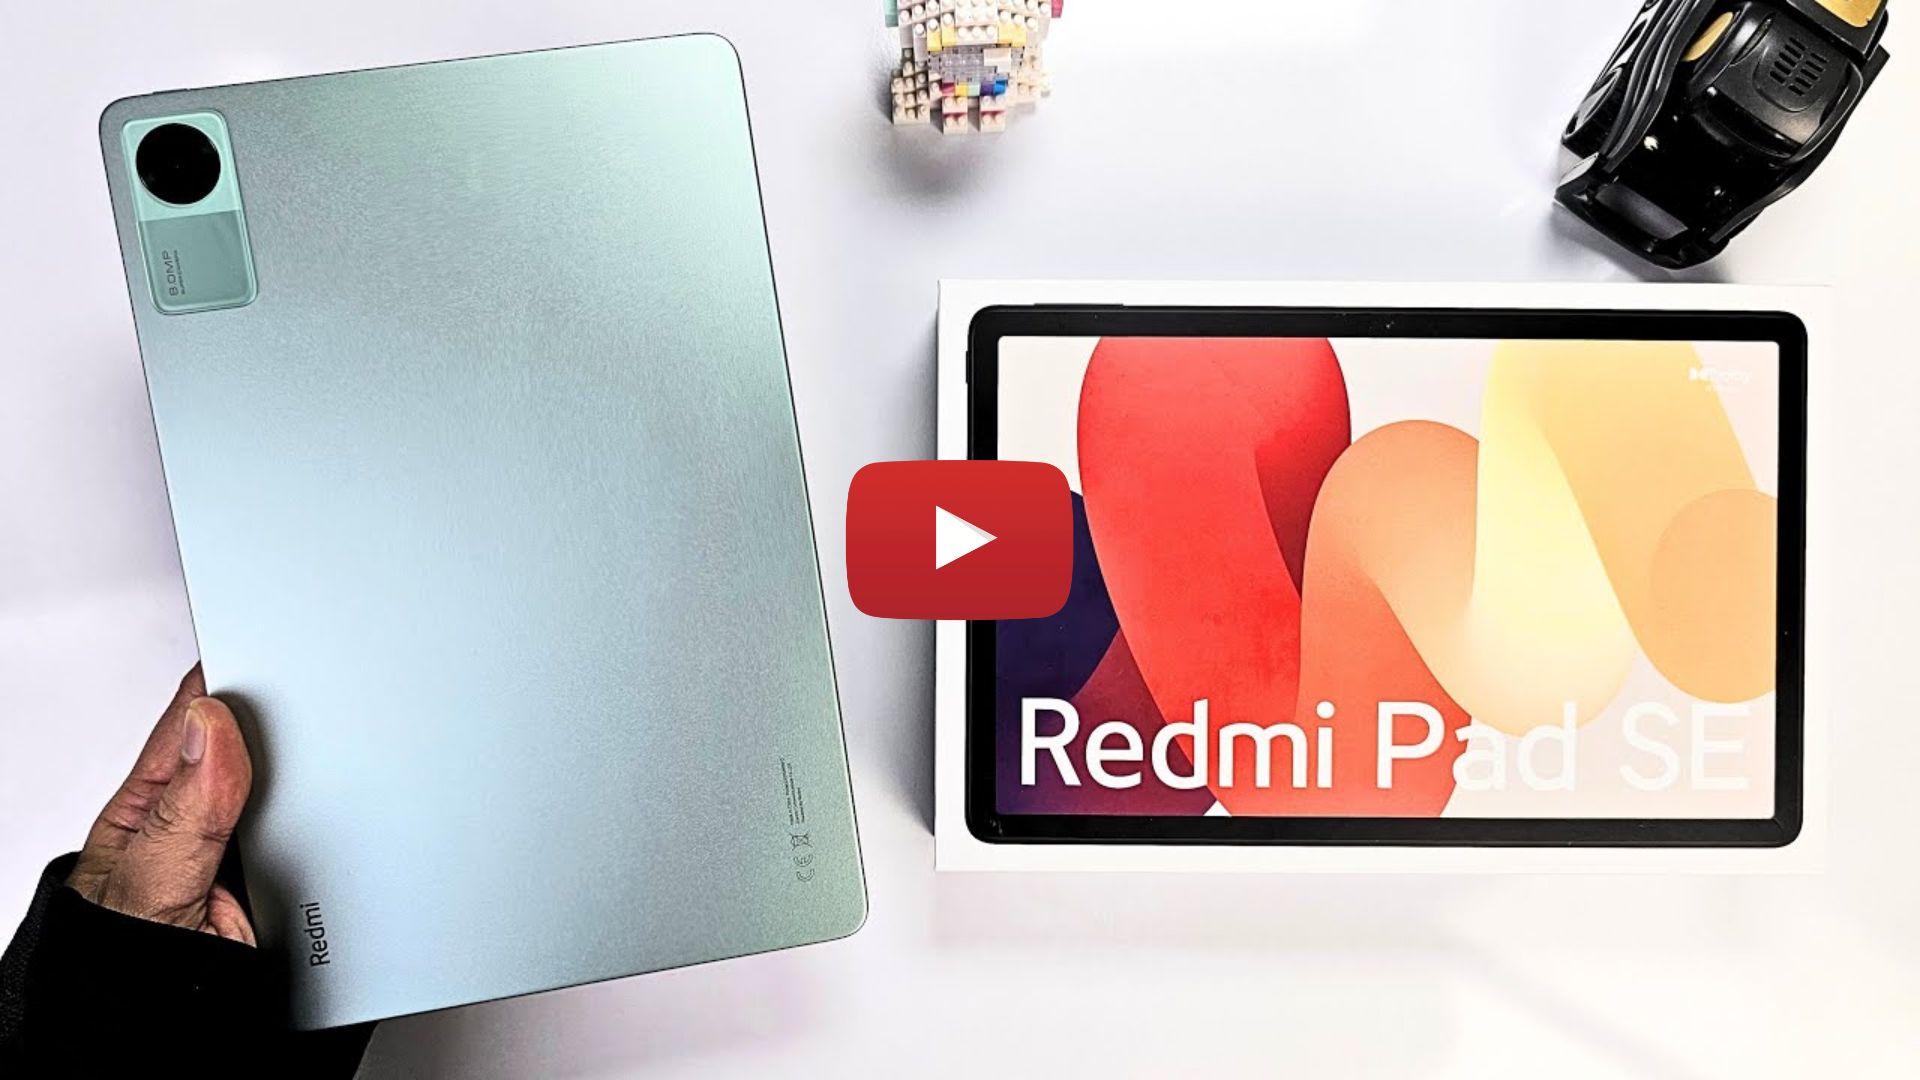 Xiaomi Redmi Pad SE Unboxing  Hands-On, Antutu, Design, Unbox